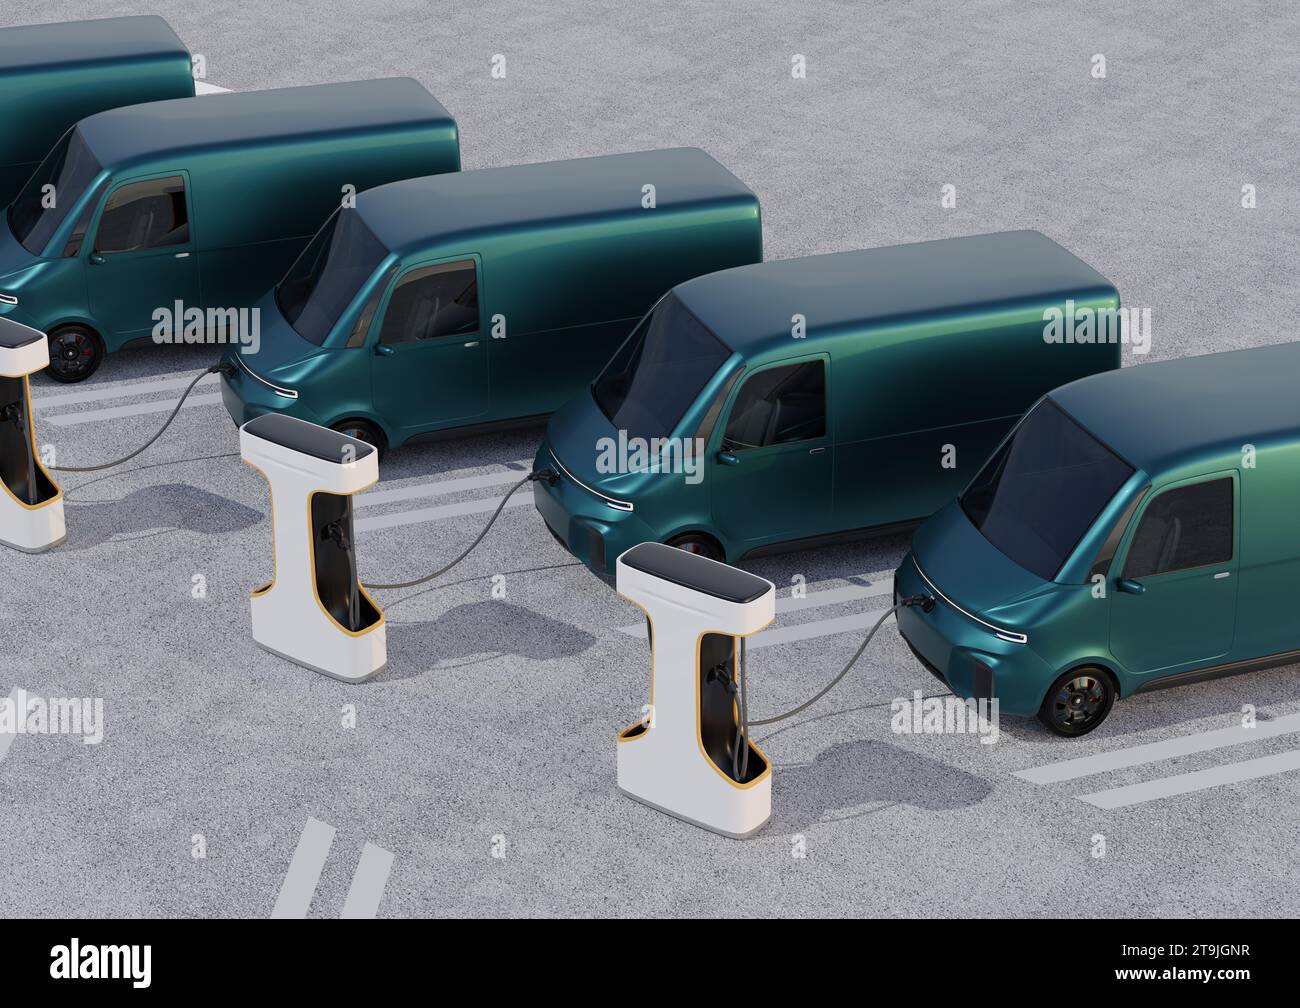 Flotte de fourgons électriques de livraison se chargeant dans la station de charge. Conception générique. Image de rendu 3D. Banque D'Images